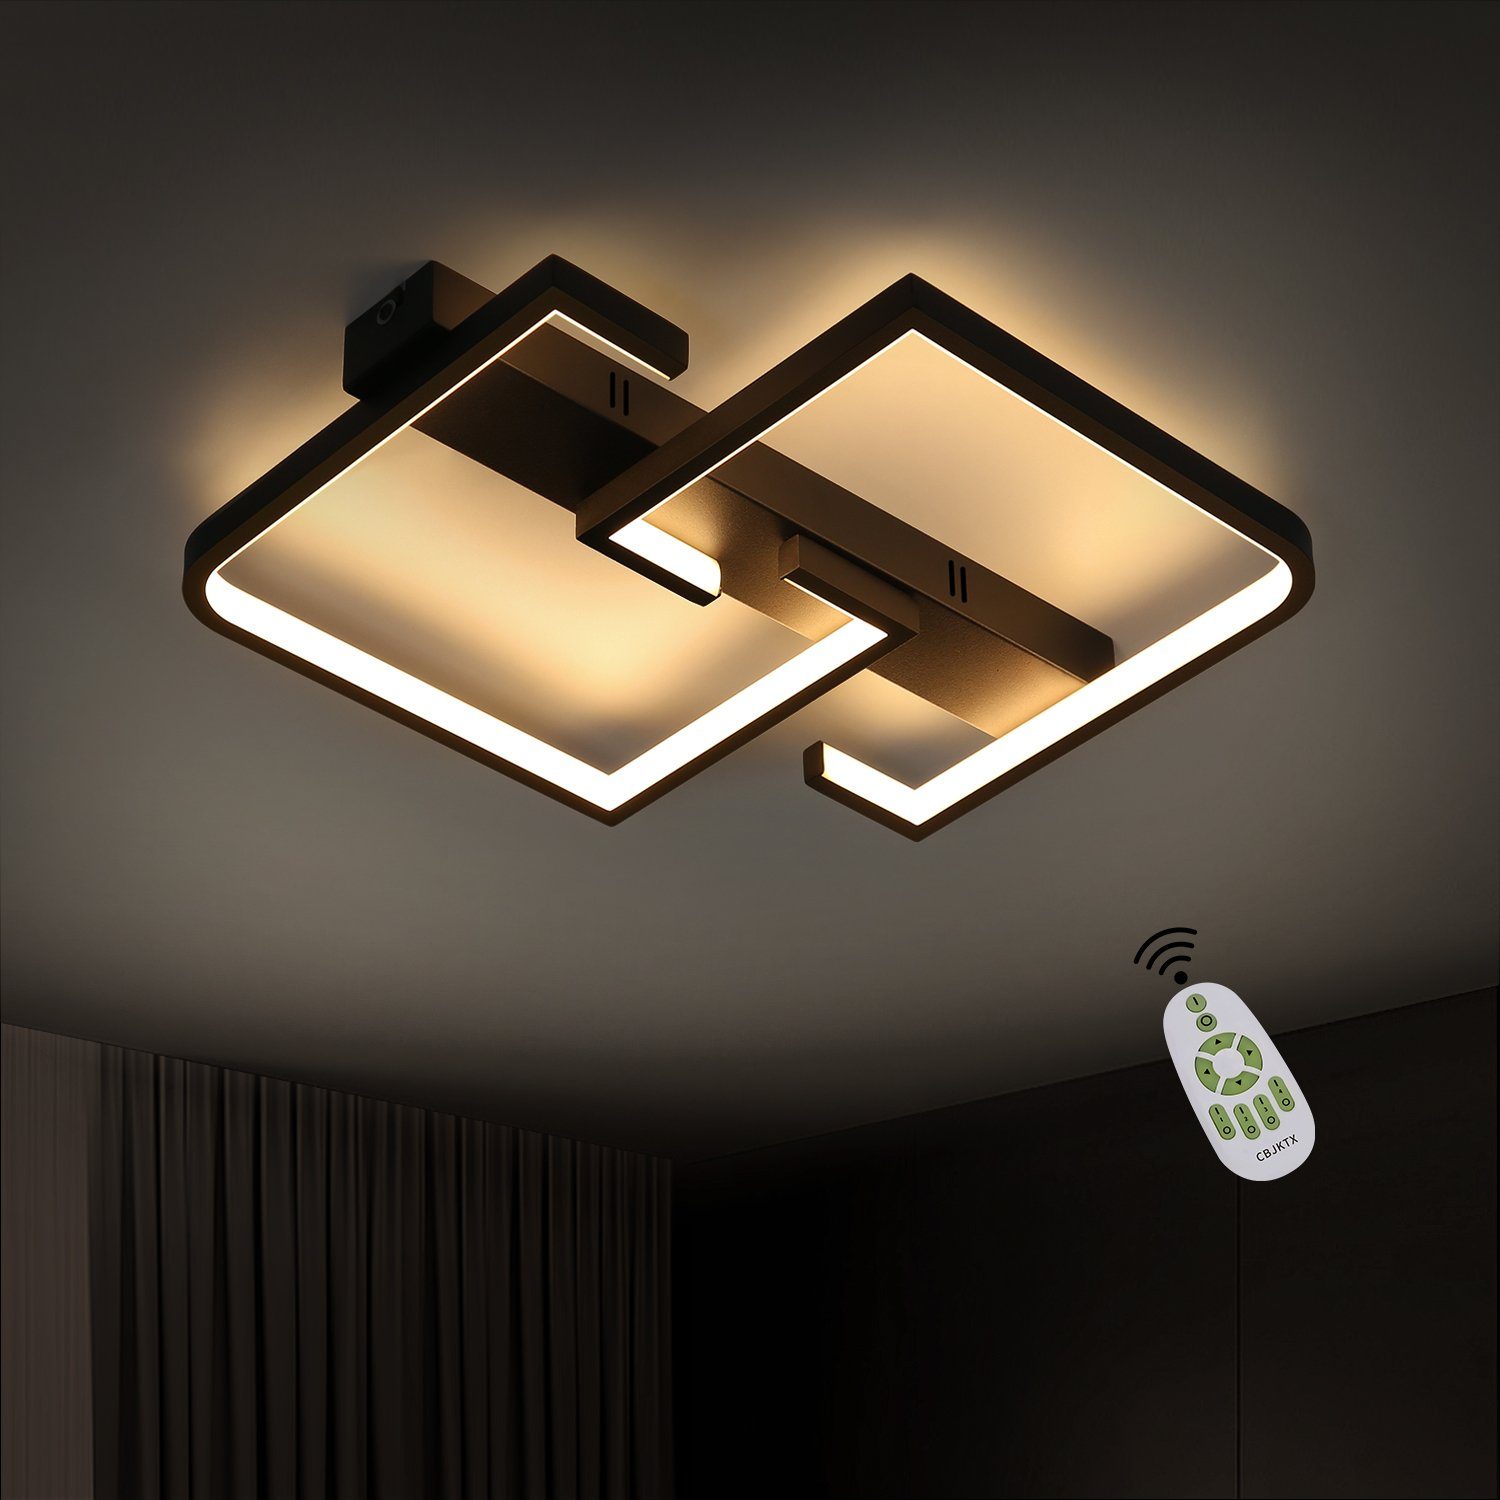 Elegante LED Glas Decken Lampe 12 W rund Küchen Restaurant Leuchte Amber EEK A 